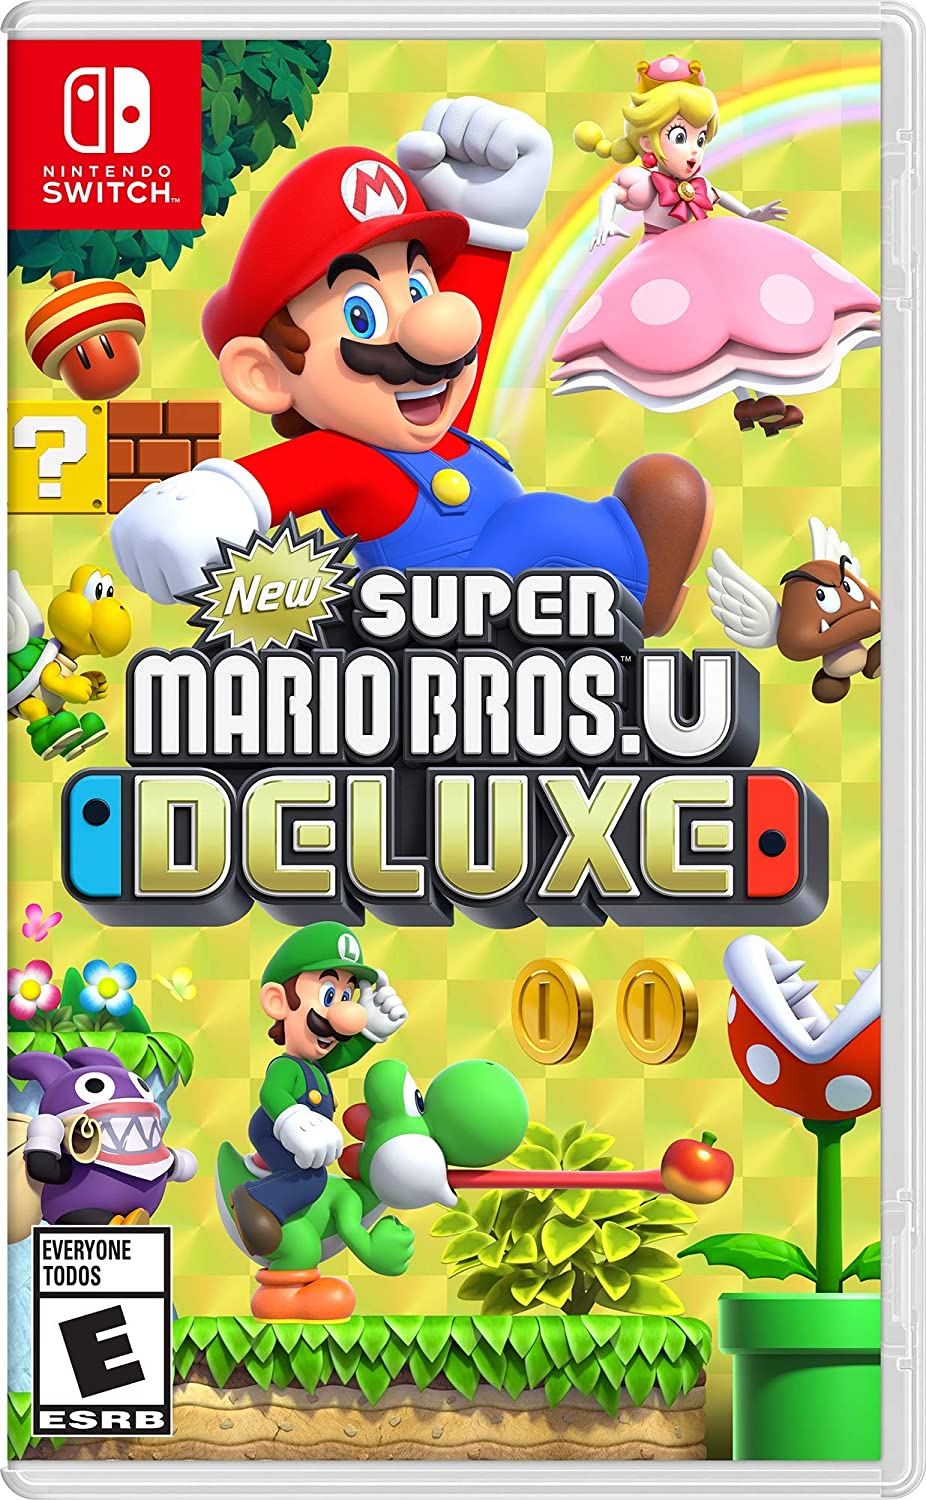 New Super Mario Bros U Deluxe Free Download GAMESPACK.NET